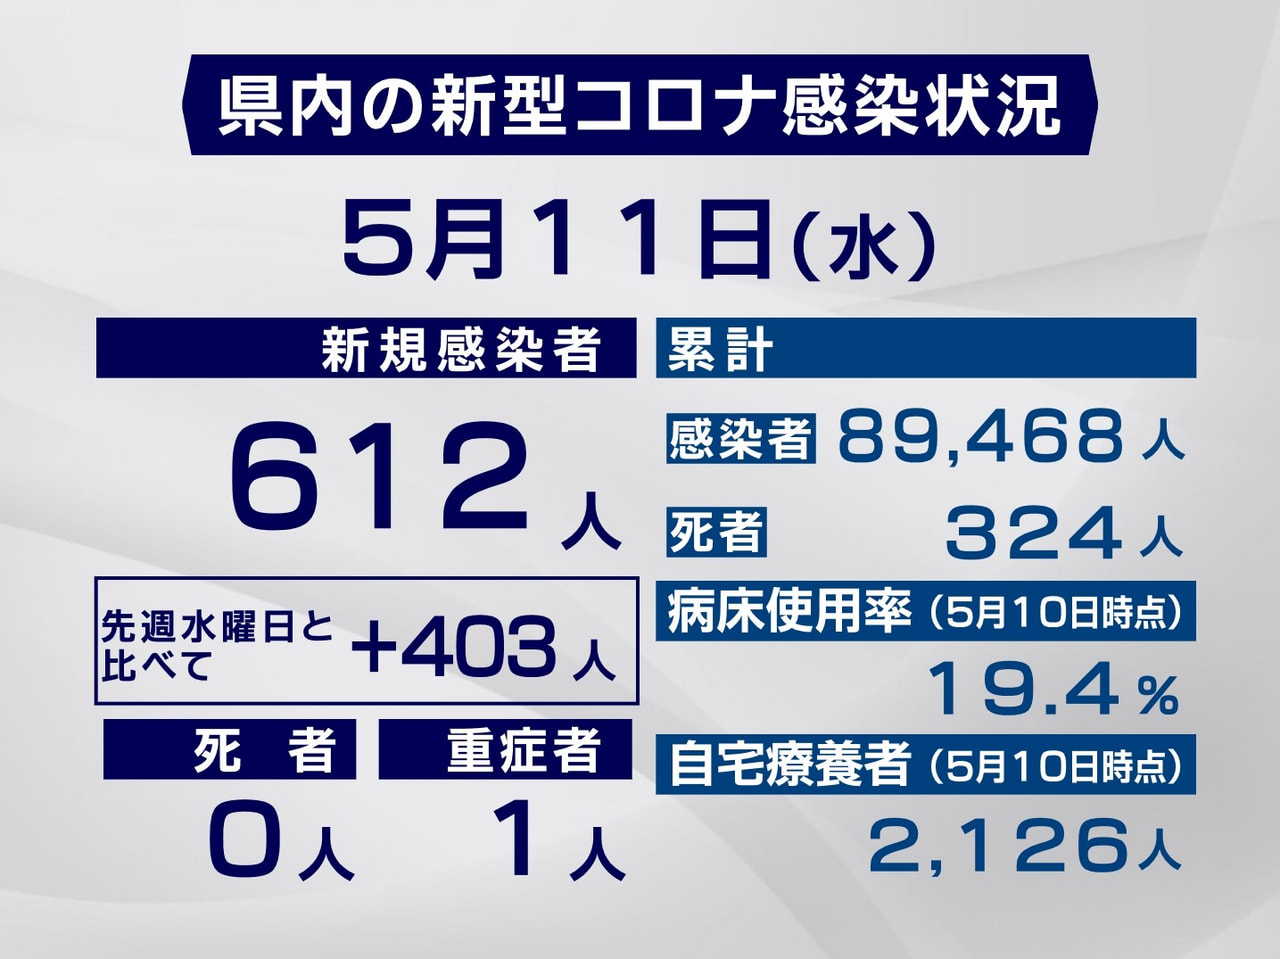 岐阜県は１１日、新型コロナウイルスの新規感染者が６１２人確認されたと発表しました...